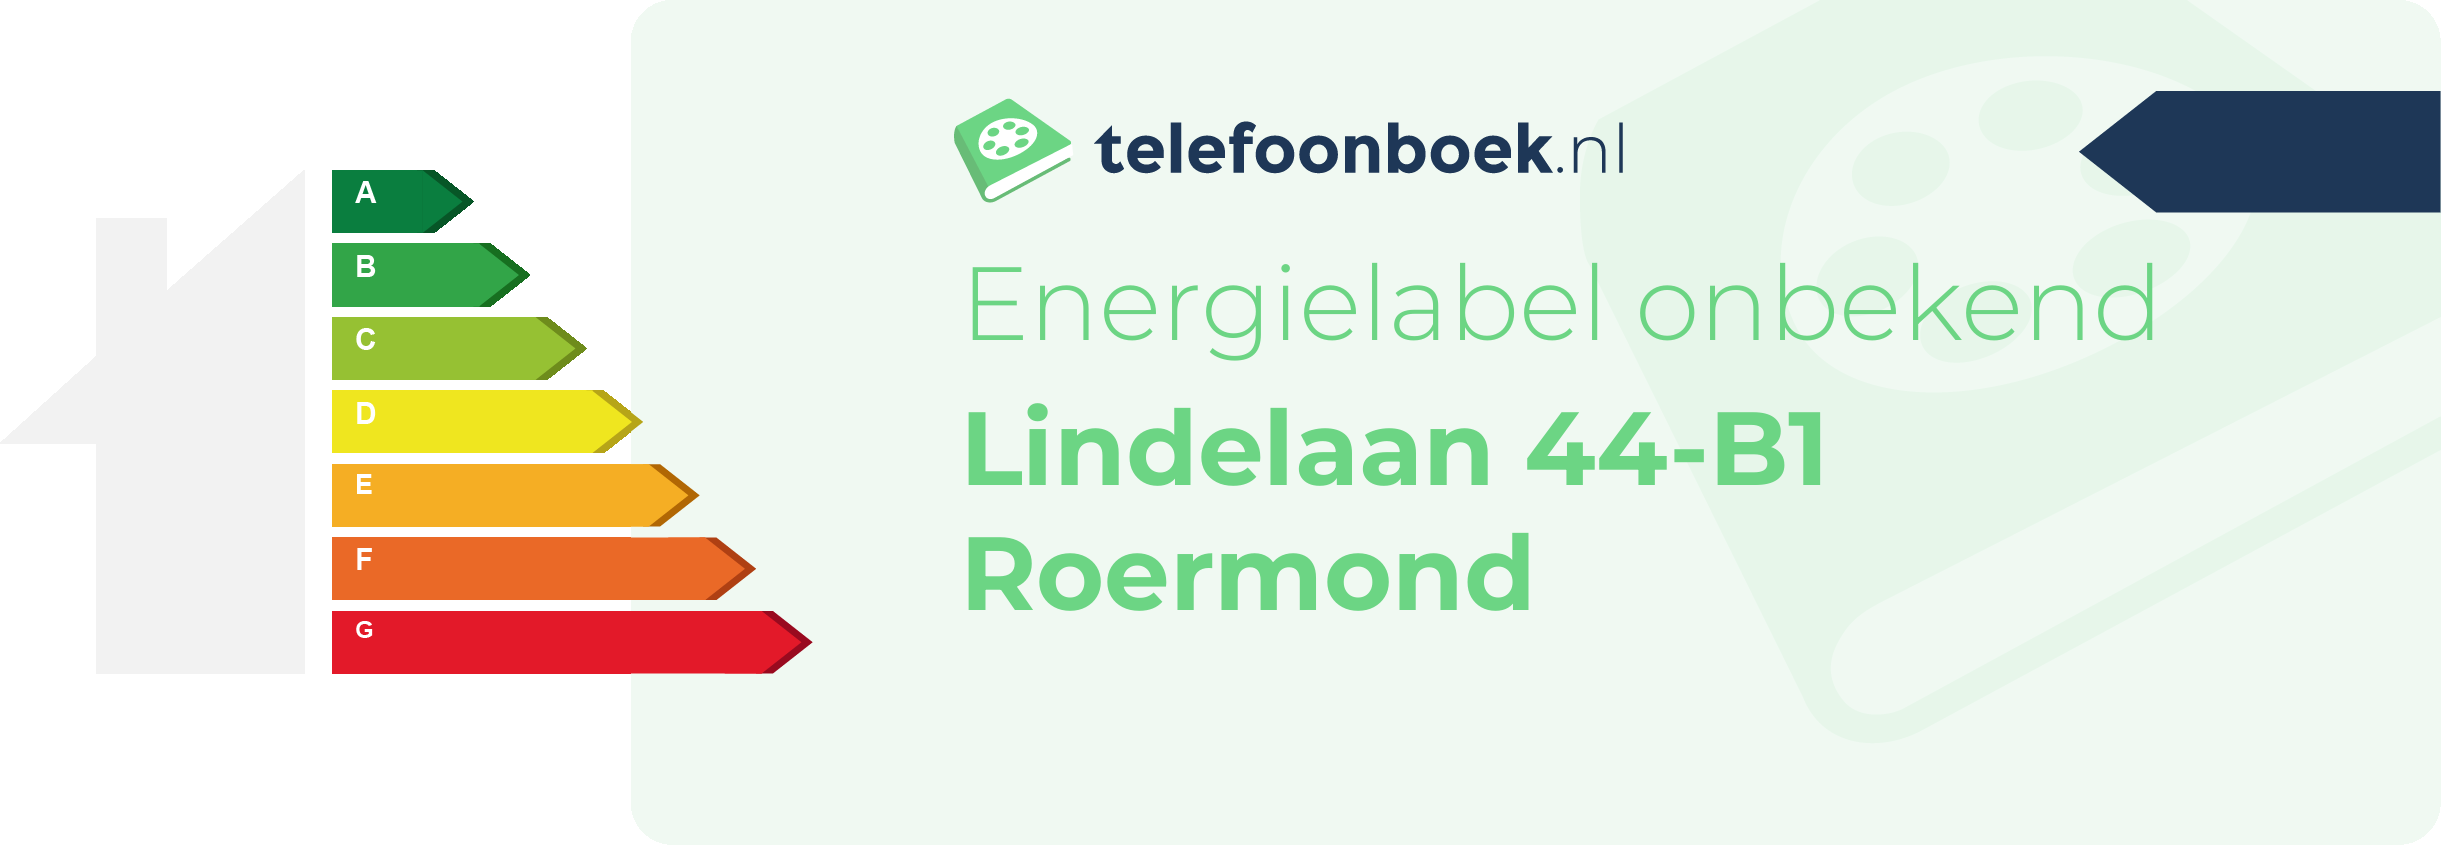 Energielabel Lindelaan 44-B1 Roermond